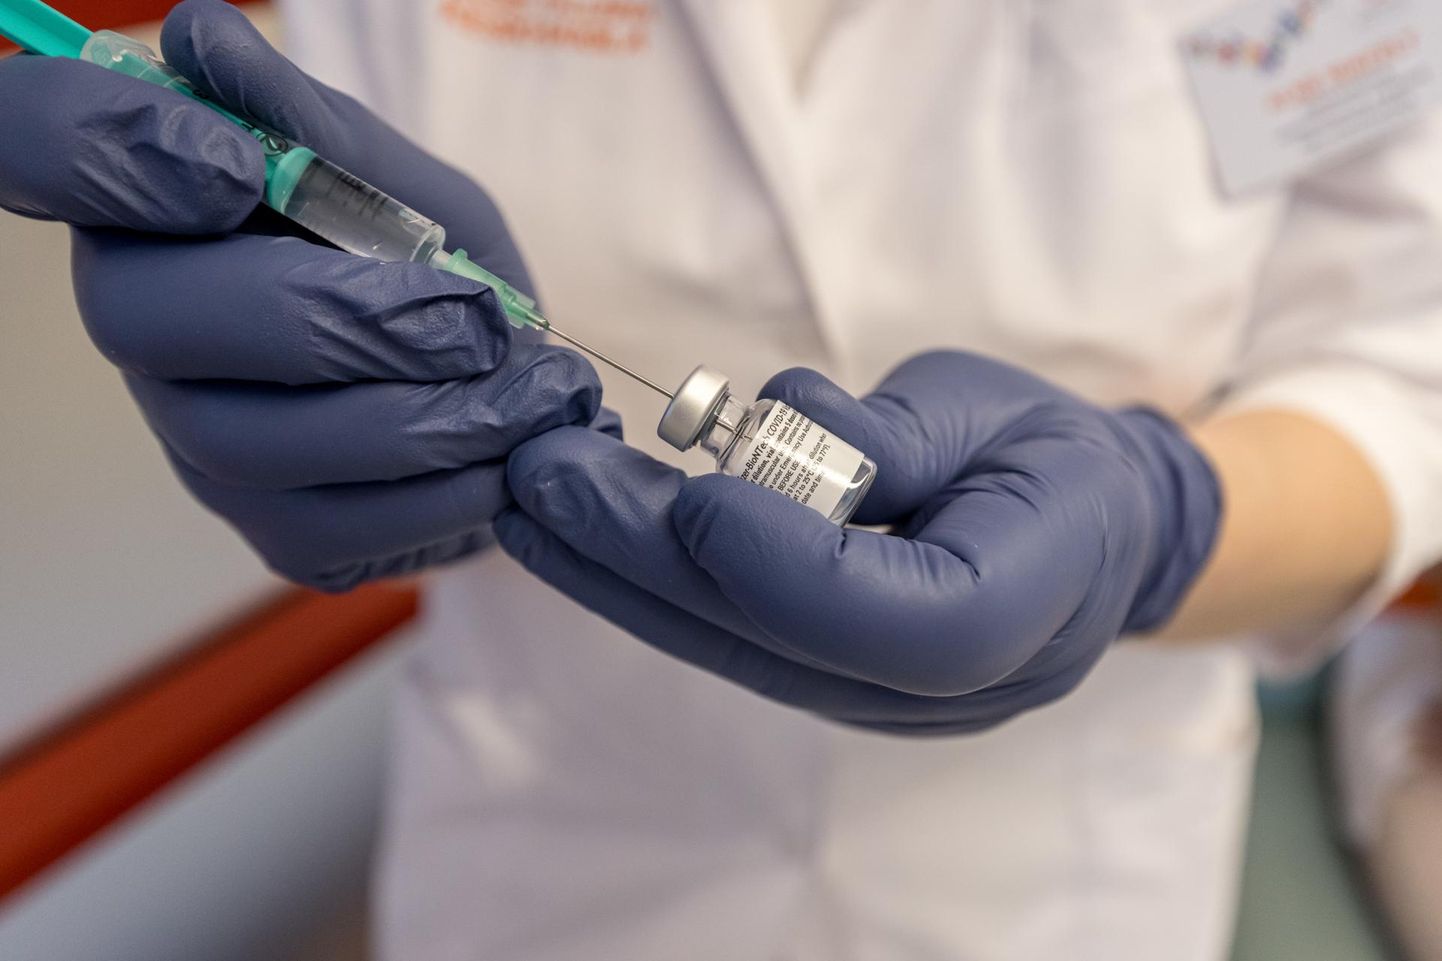 Поставки вакцины в Эстонию должны значительно увеличиться, чтобы уже во втором квартале будущего года можно было сдалать вакцину доступной для всех желающих.